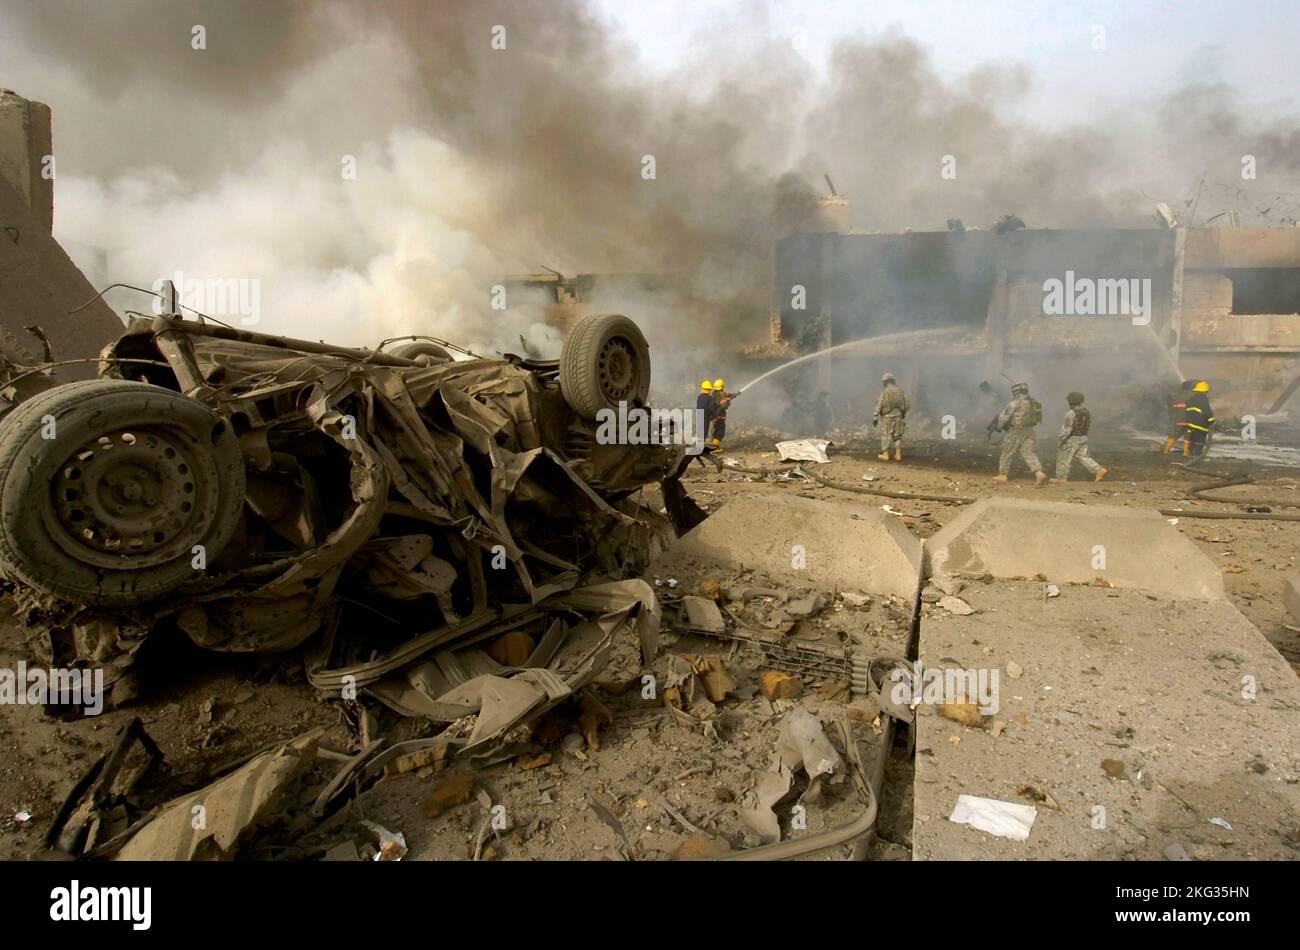 BAGDAD, IRAK - 27 août 2006 - Un « engin explosif improvisé né dans un véhicule » ou une bombe à auto après avoir explosé dans une rue à l'extérieur du journal Al Sabah Banque D'Images